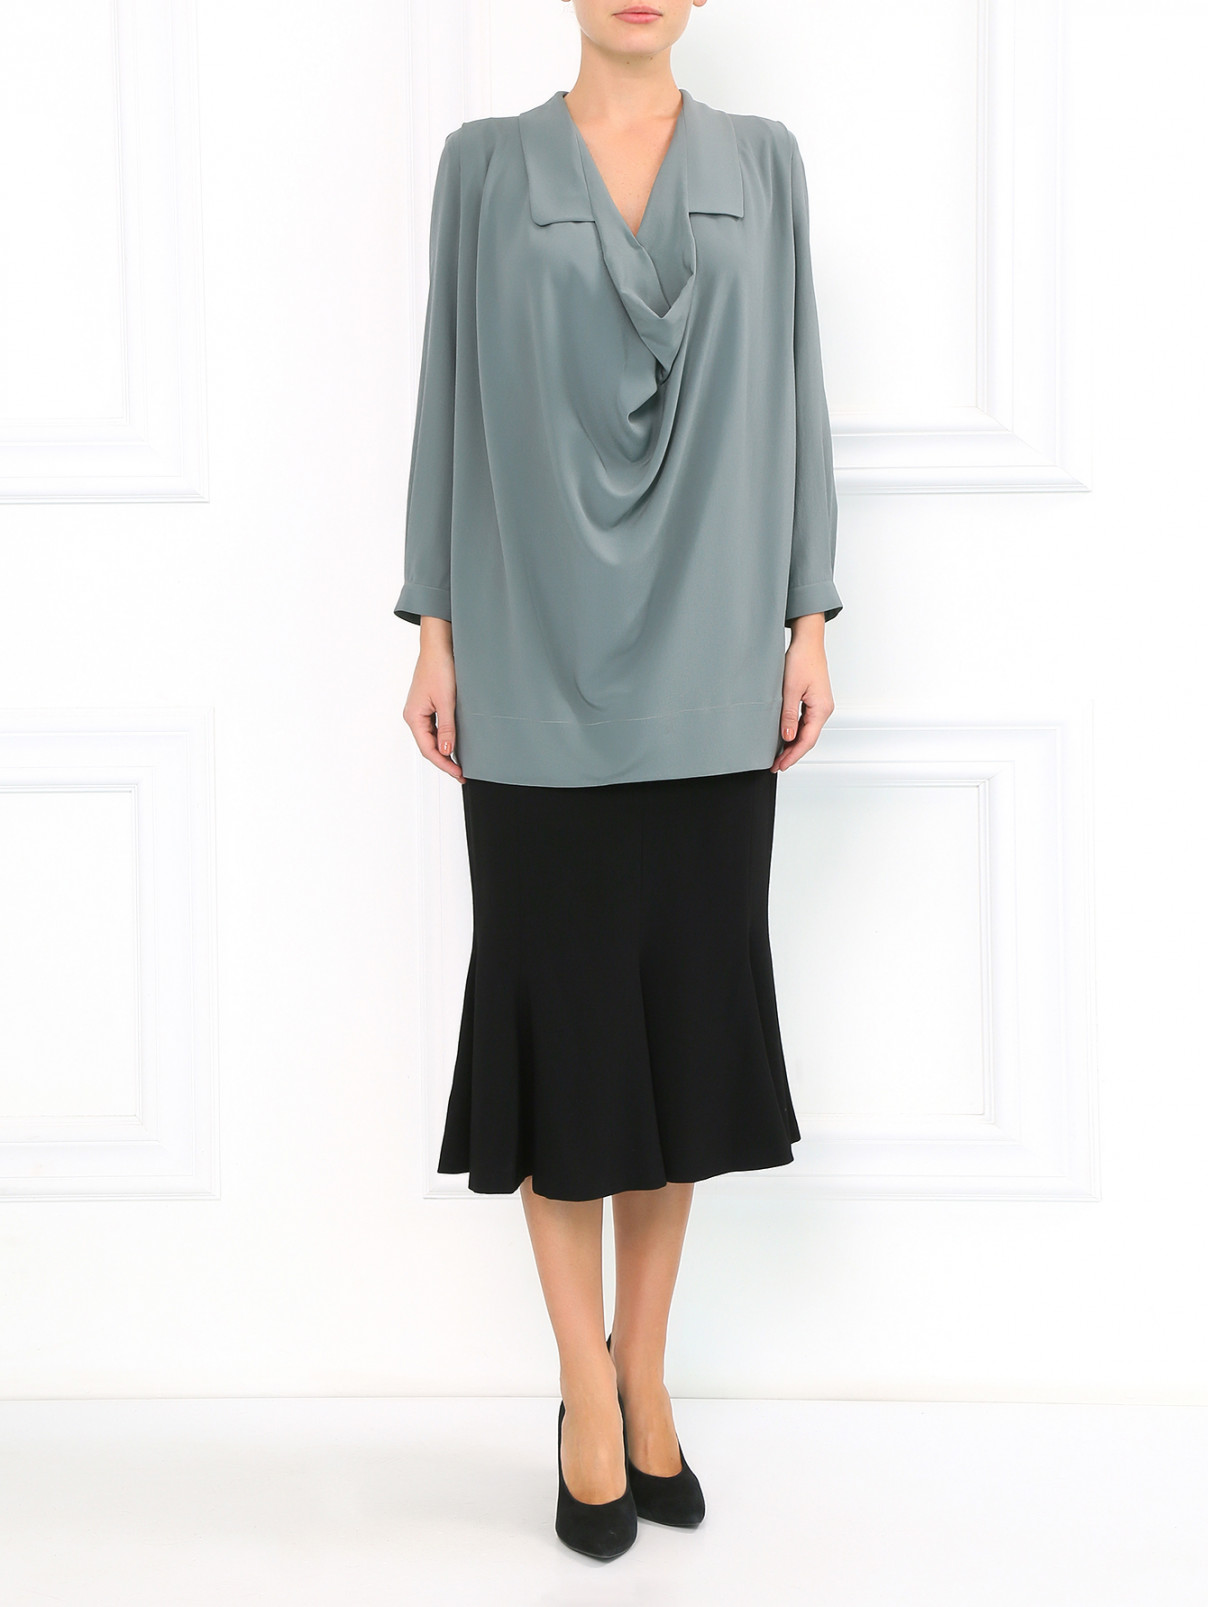 Блуза из шелка с драпировкой Antonio Marras  –  Модель Общий вид  – Цвет:  Серый